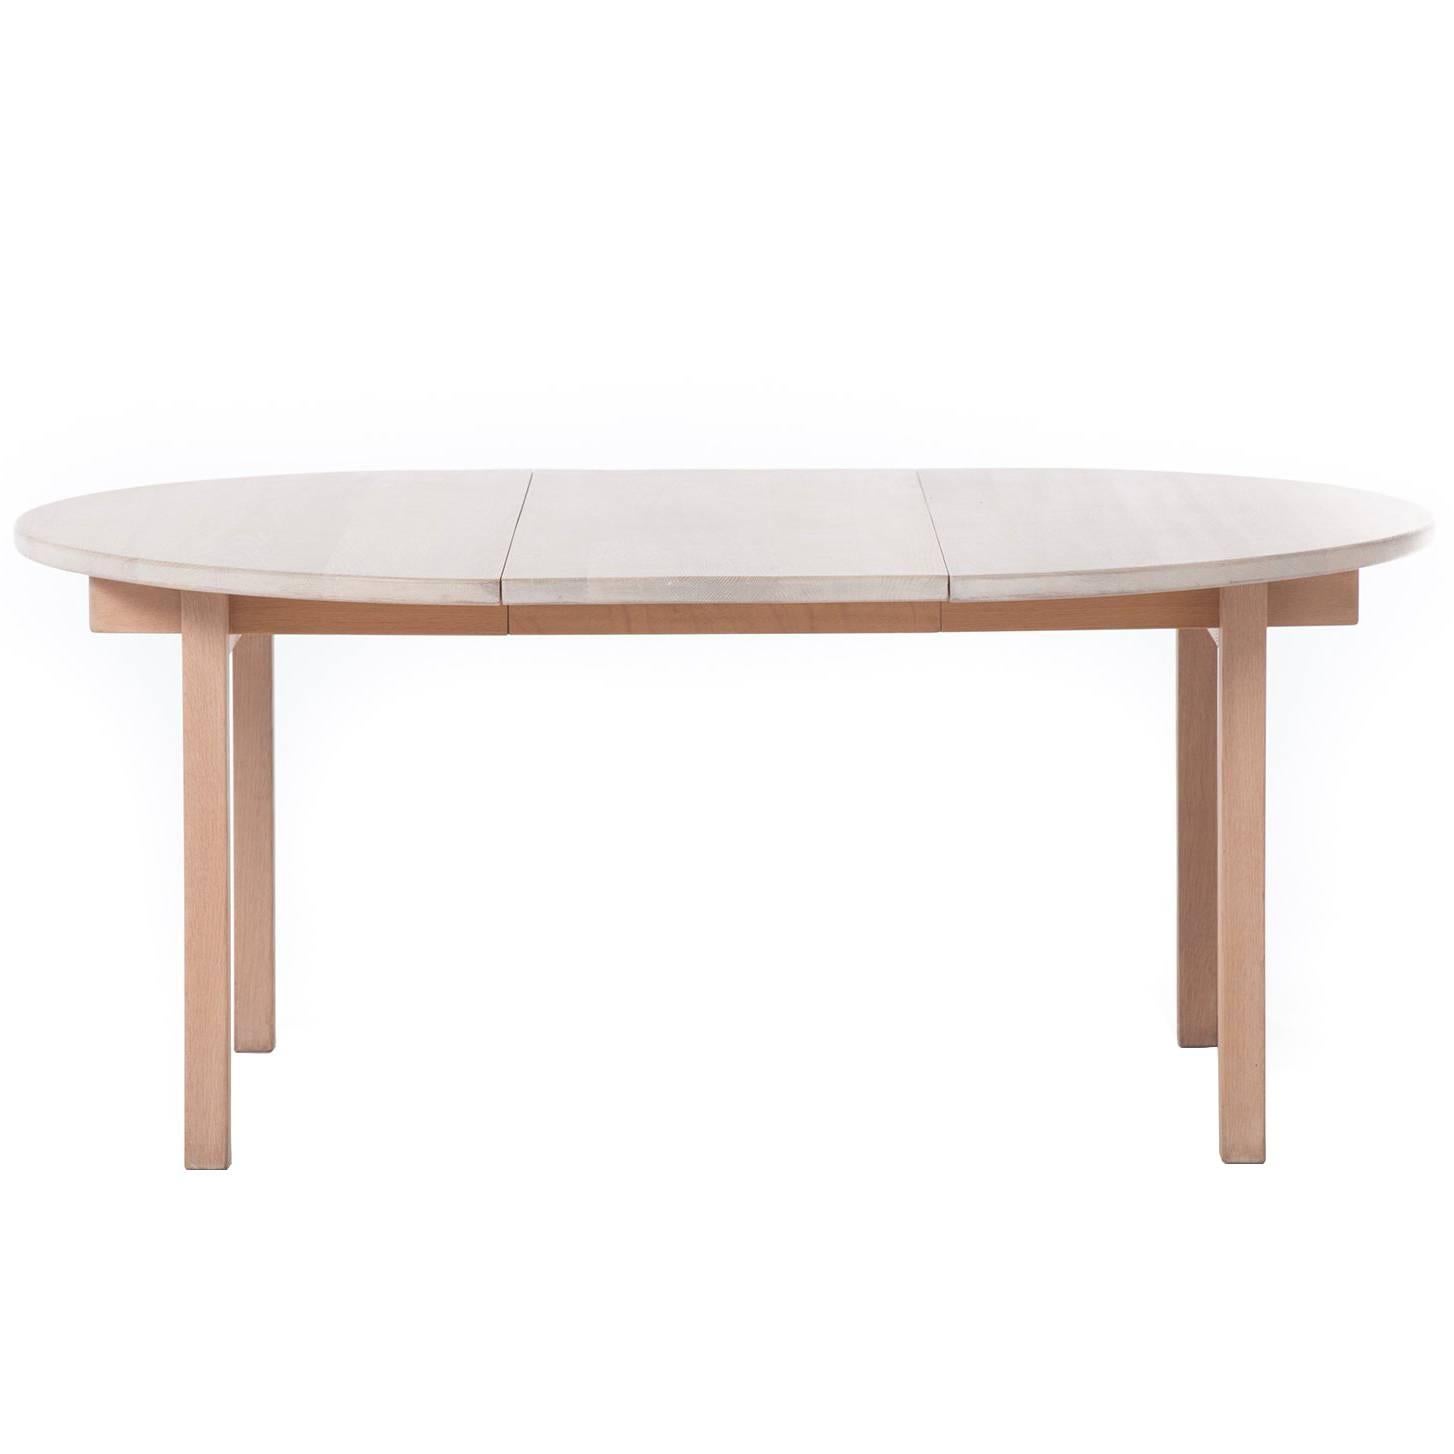 Danish Modern White Oak Dining Table